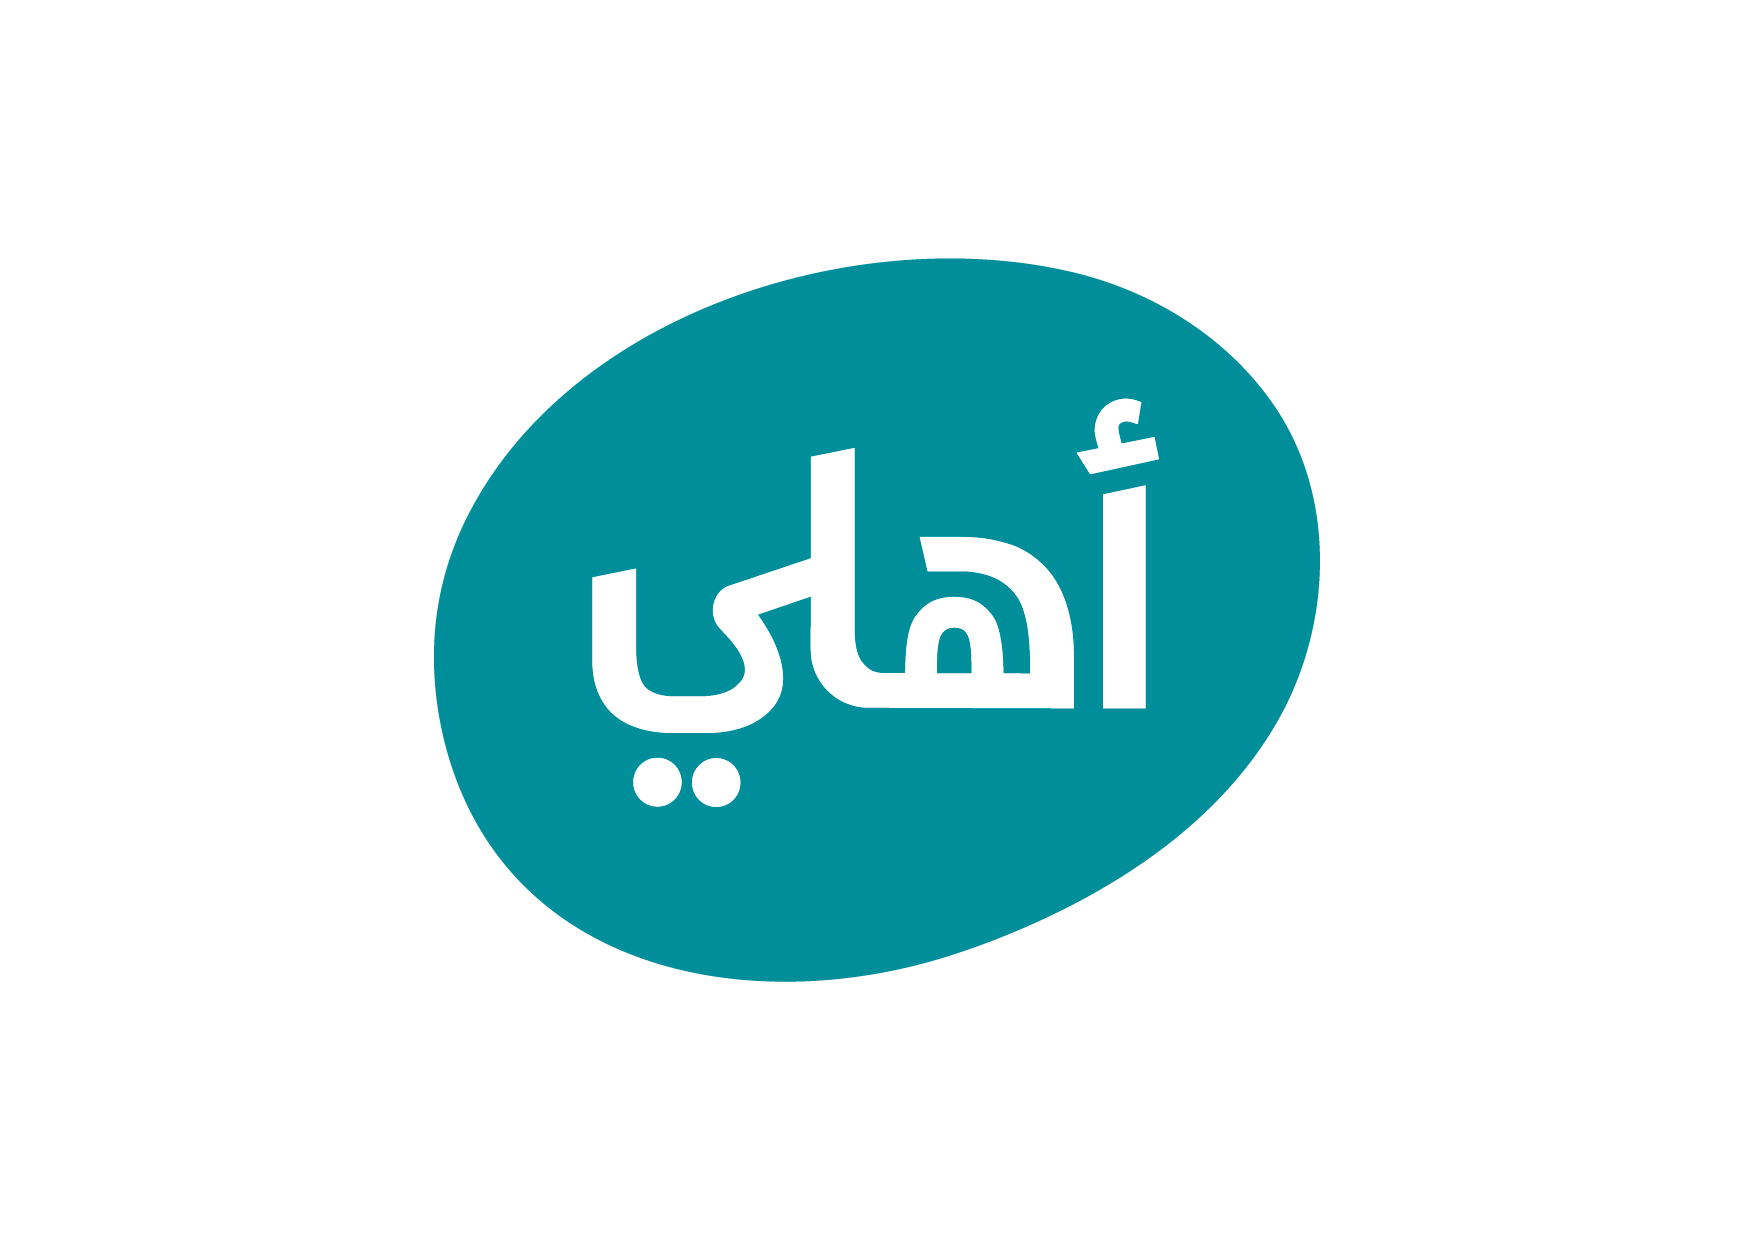    البنك الأهلي الأردني يقيم فعالية 《ارسم بسمة》 بالتعاون مع مدرسة اليوبيل